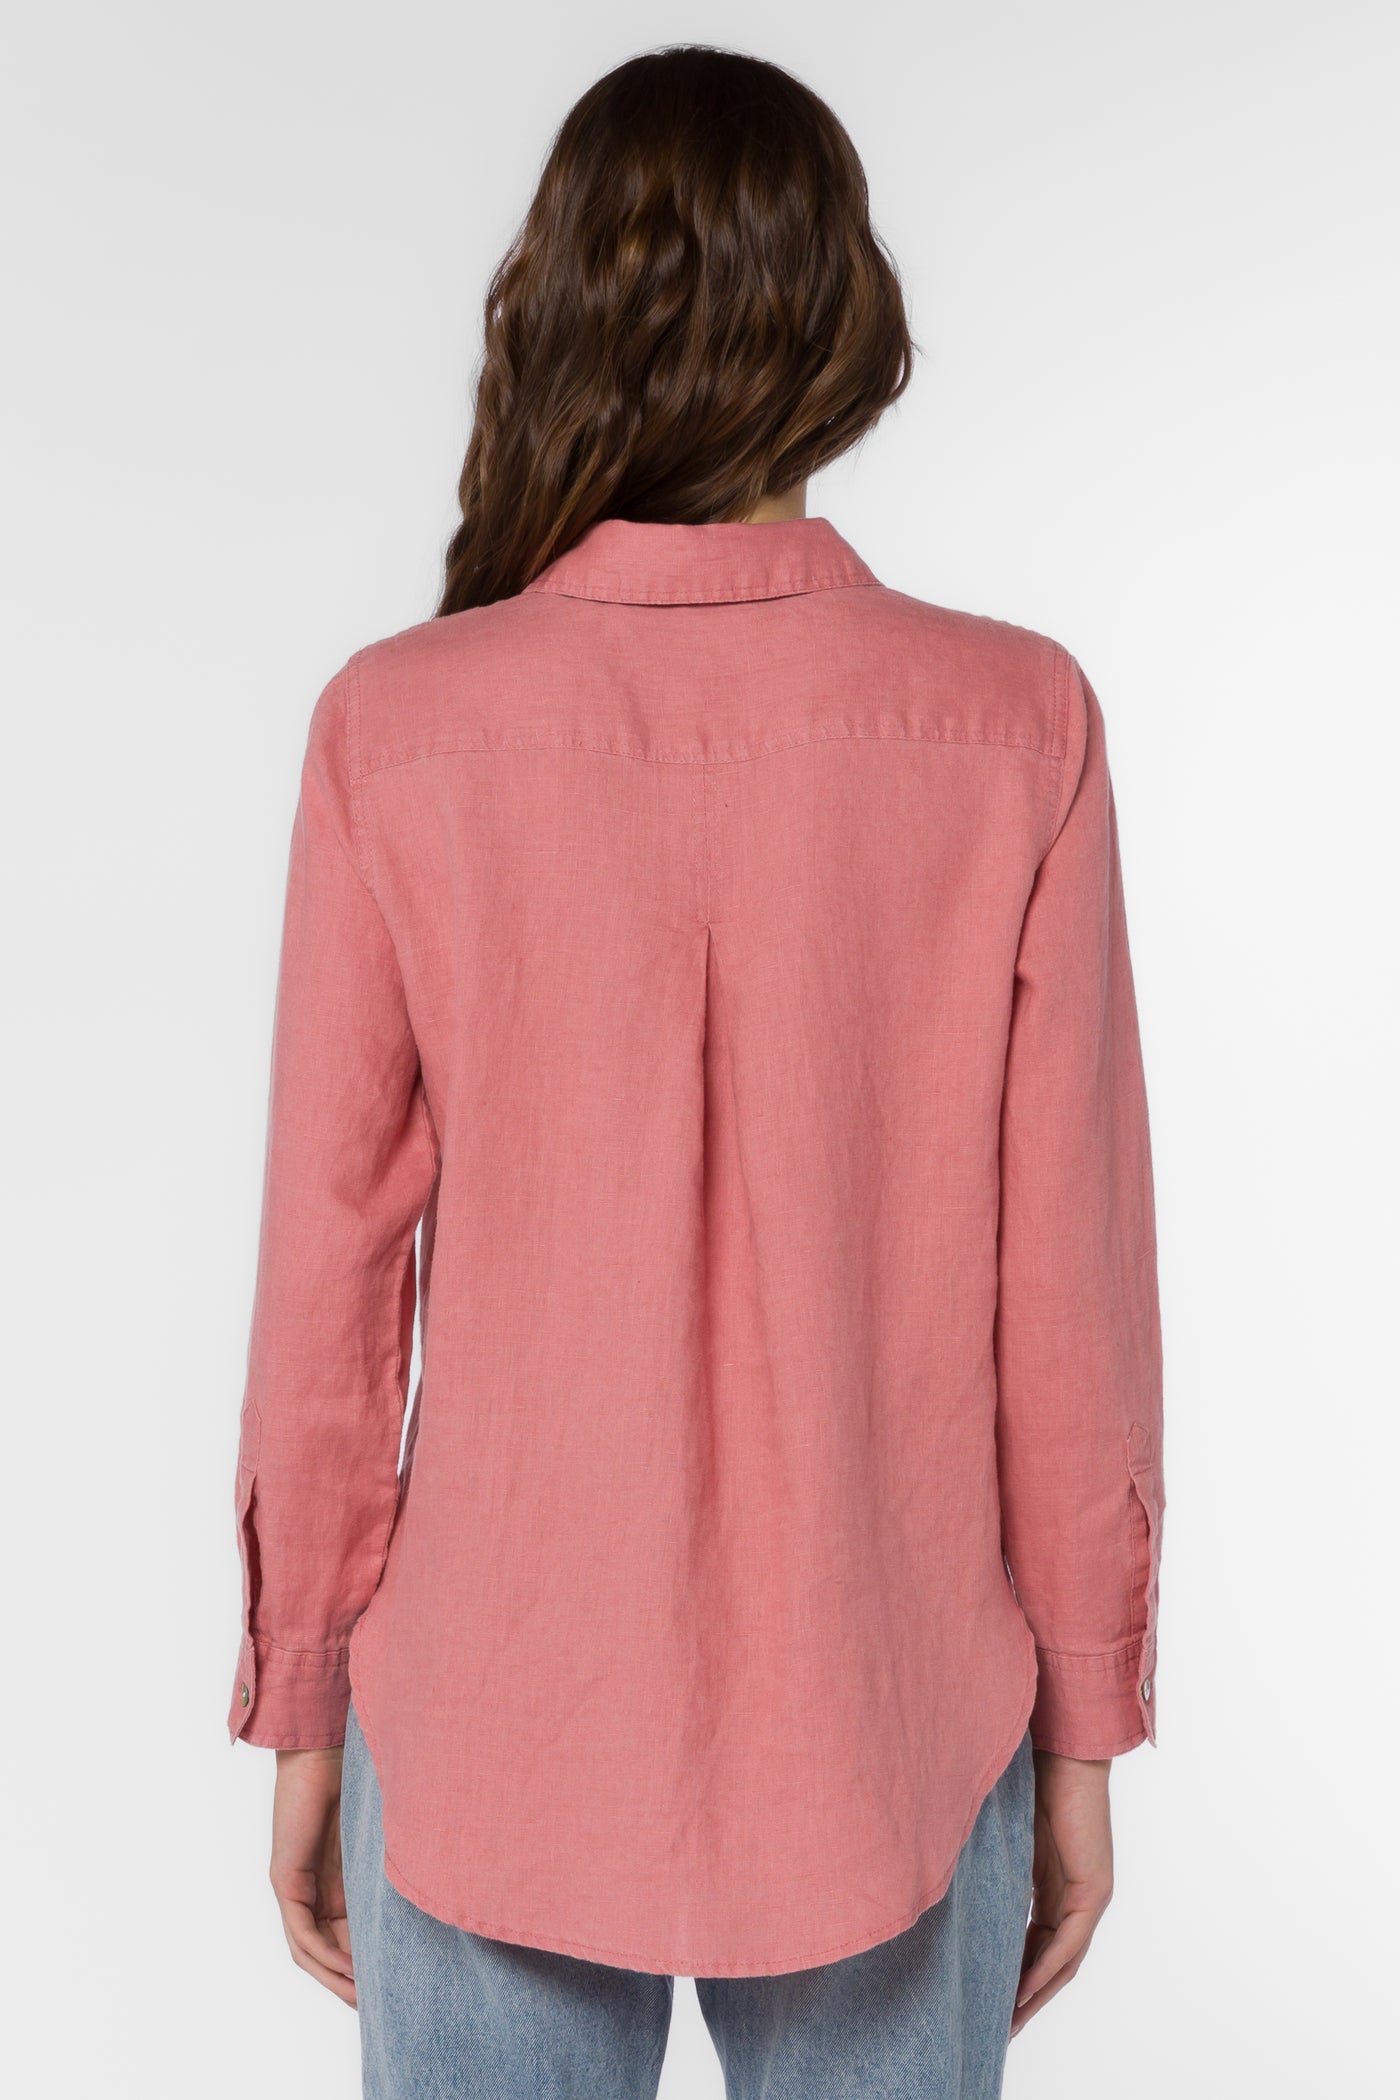 Bennett Canyon Rose Shirt - Tops - Velvet Heart Clothing